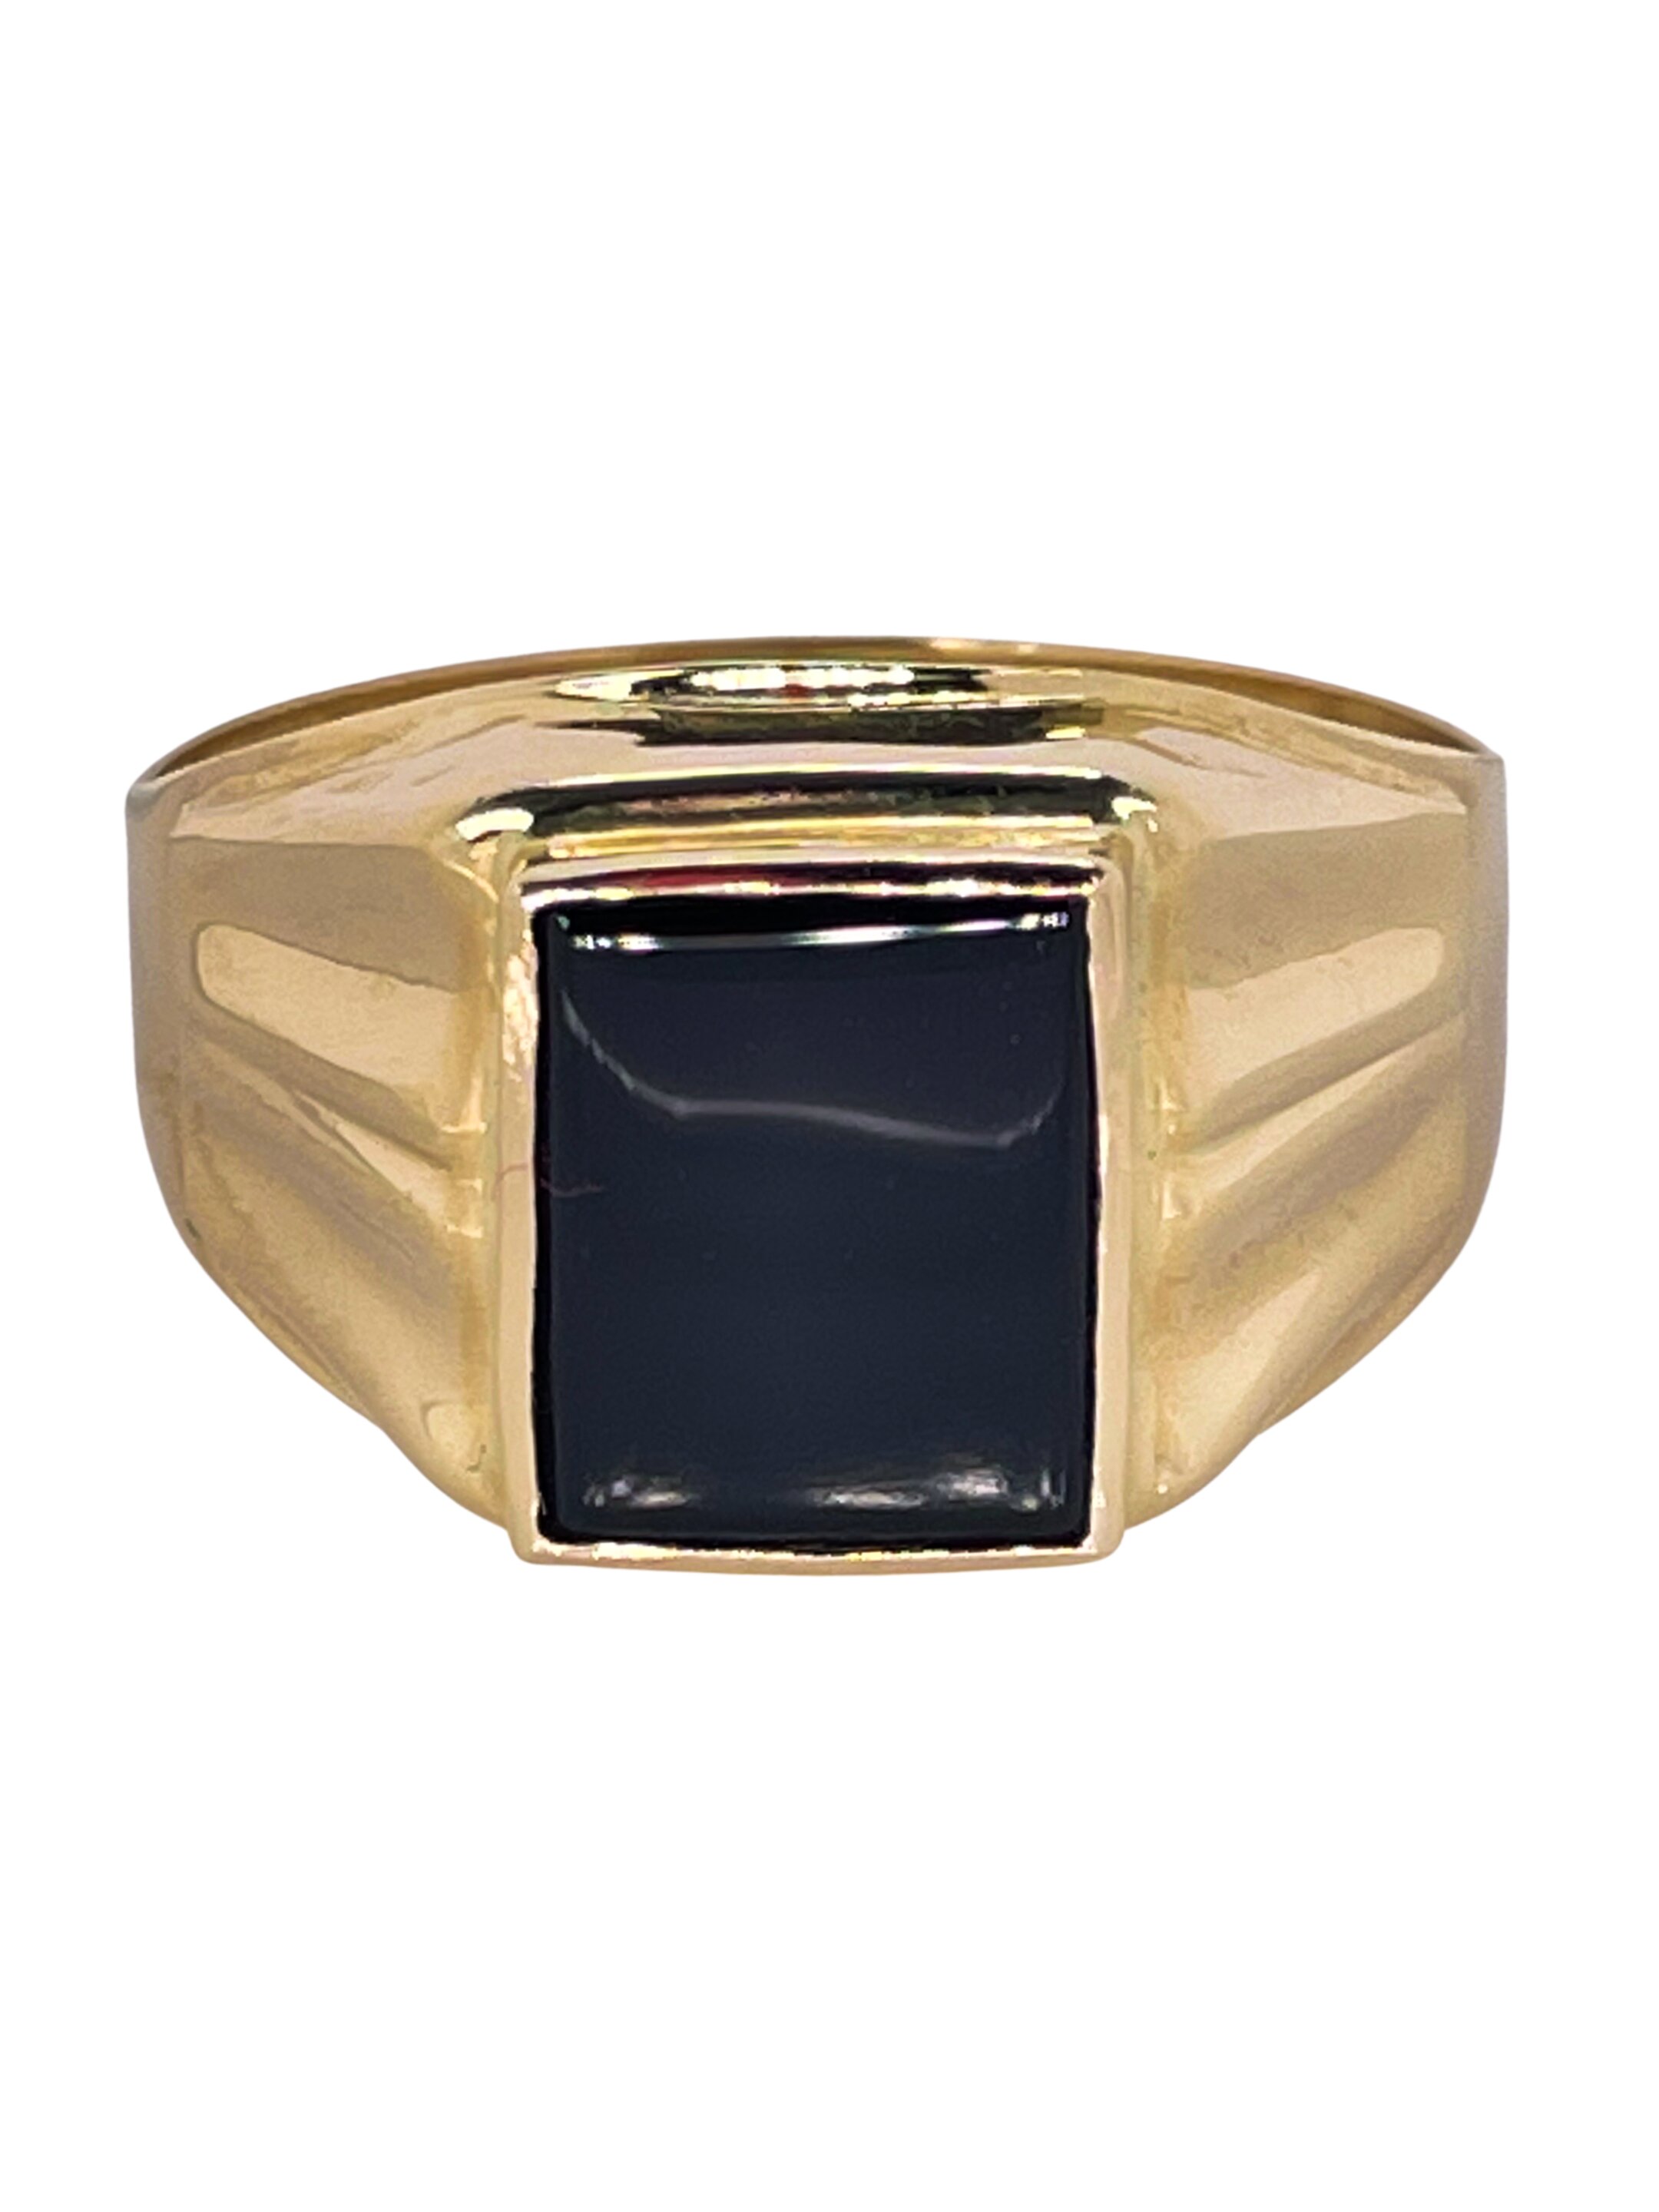 Pánský zlatý prsten s onyxem